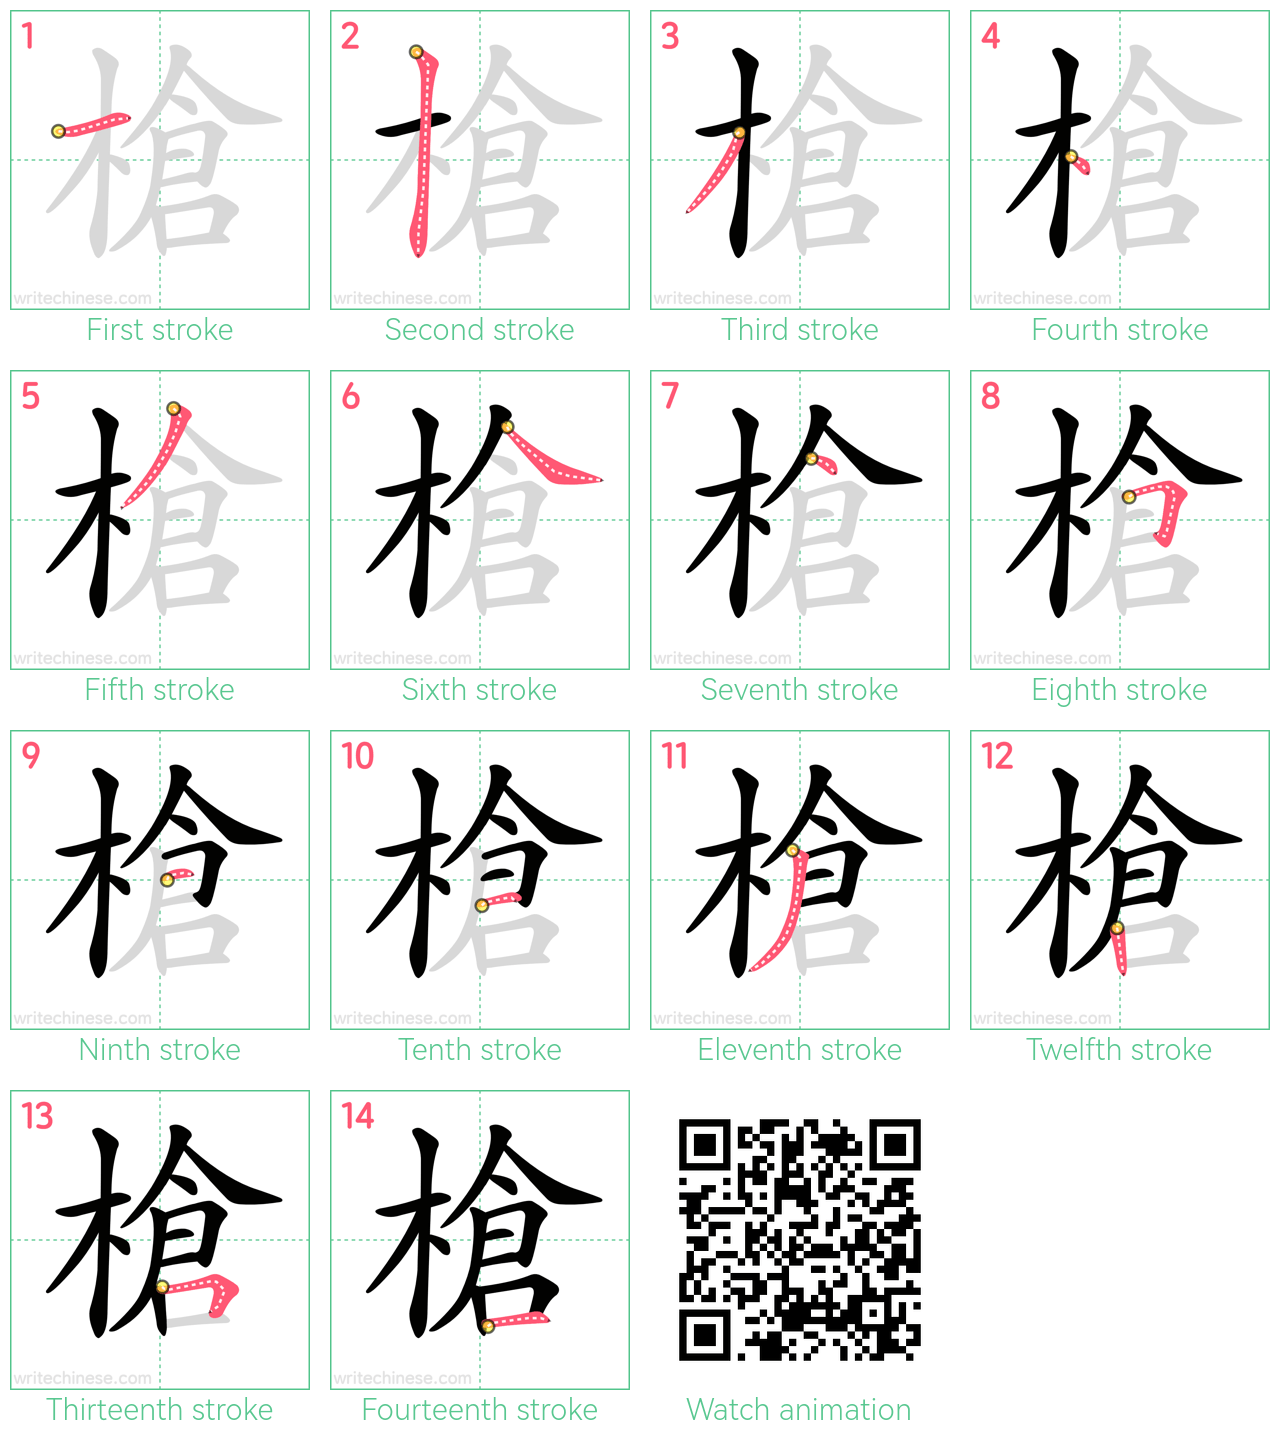 槍 step-by-step stroke order diagrams